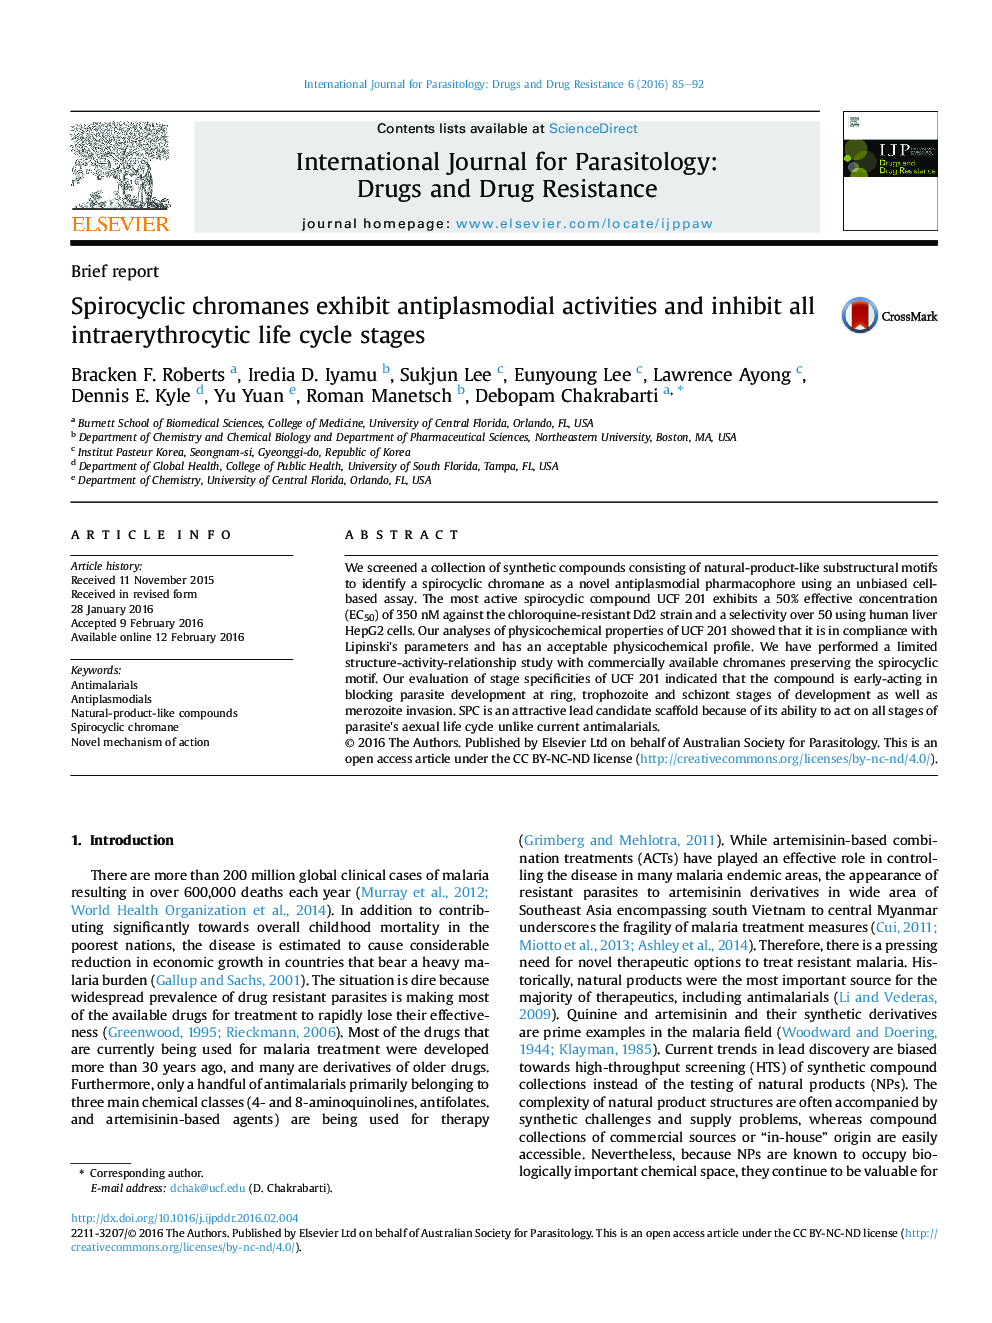 chromanes Spirocyclic نشان دهنده فعالیت های antiplasmodial و مهار تمام مراحل چرخه عمر intraerythrocytic است 